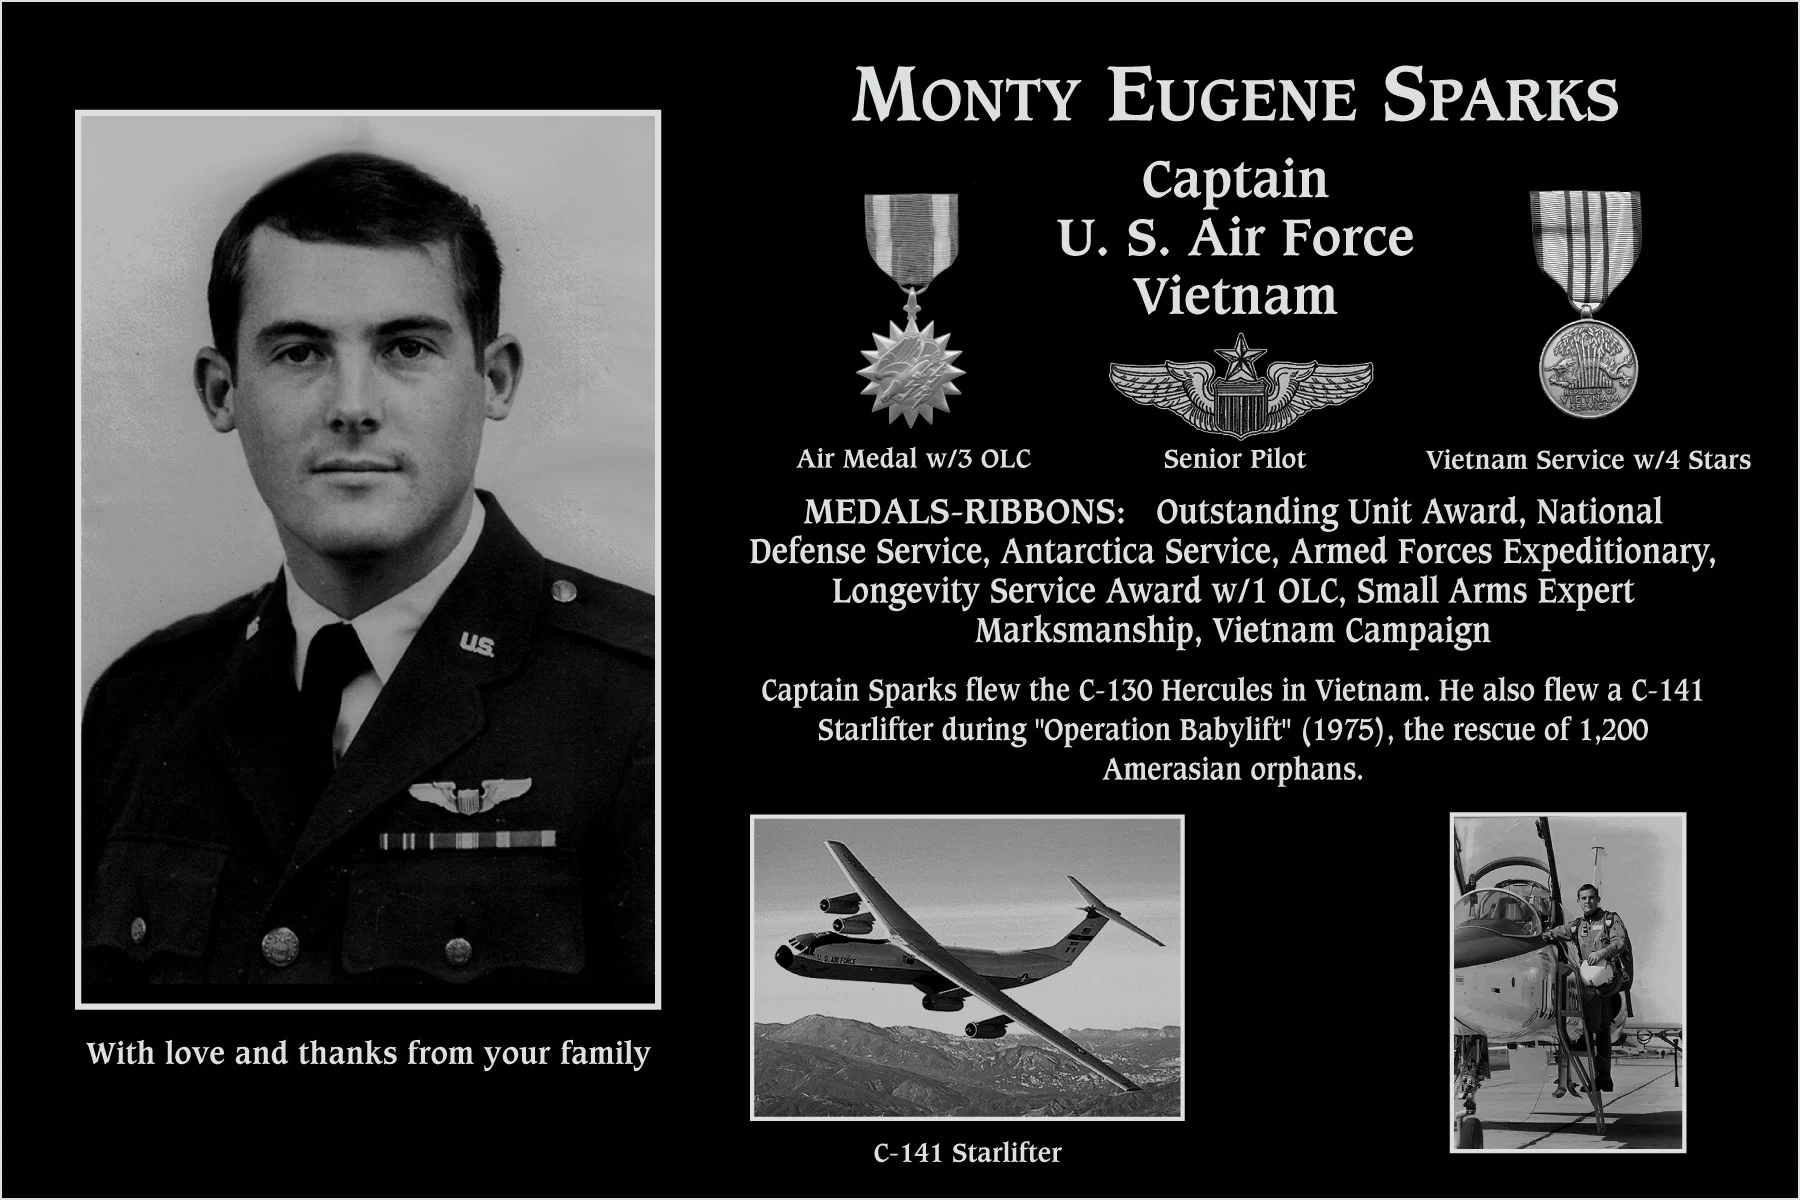 Monty Eugene Sparks